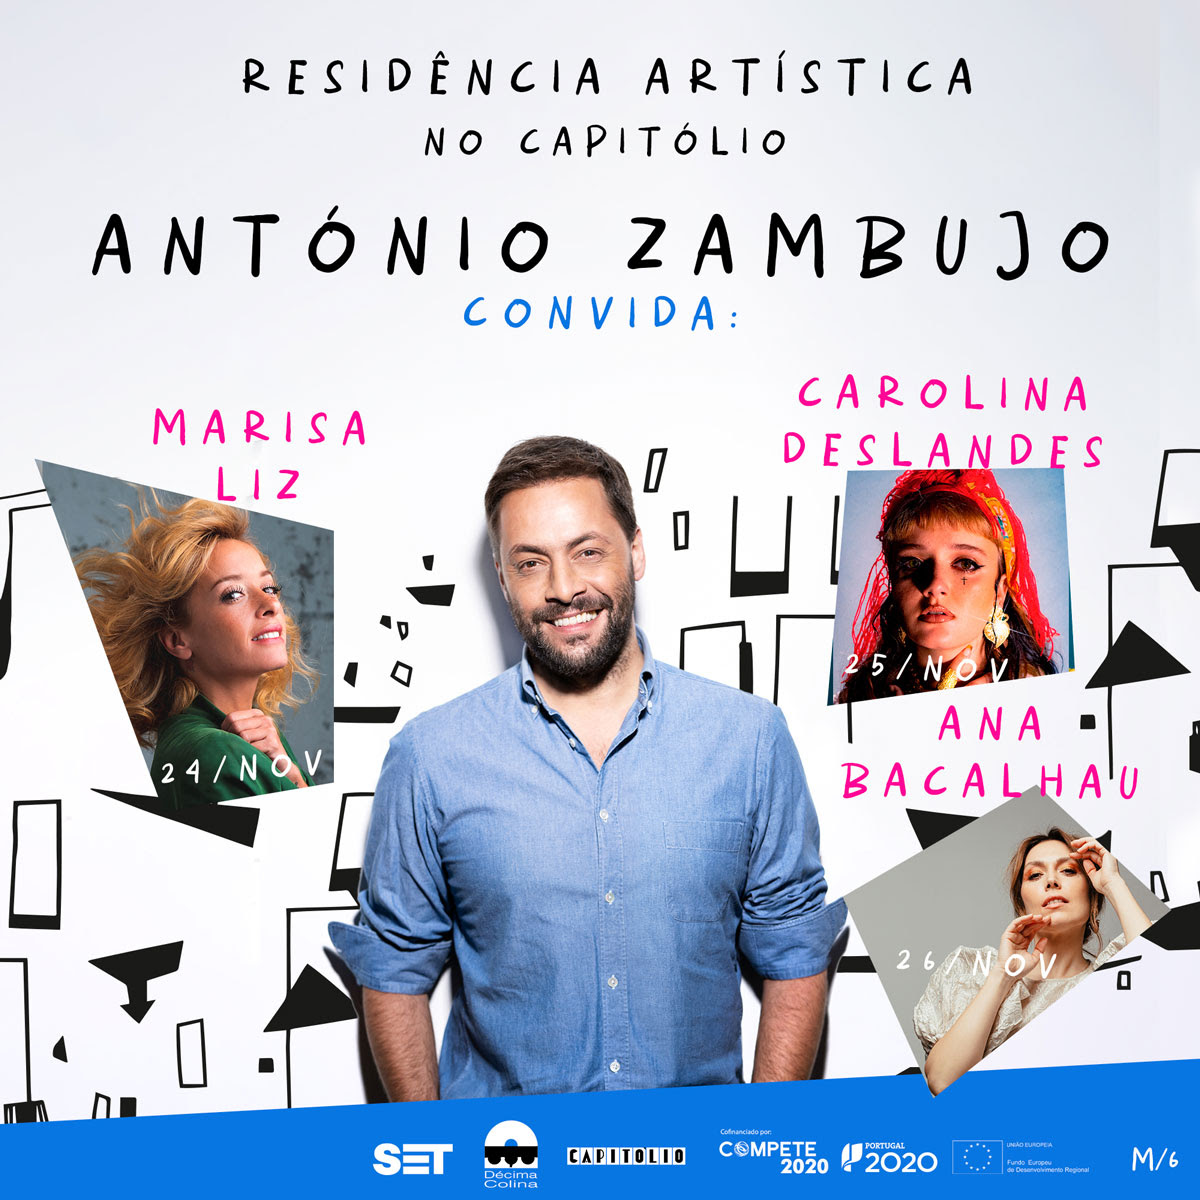 Residência artística de António Zambujo no Capitólio começa amanhã com duas das três noites esgotadas